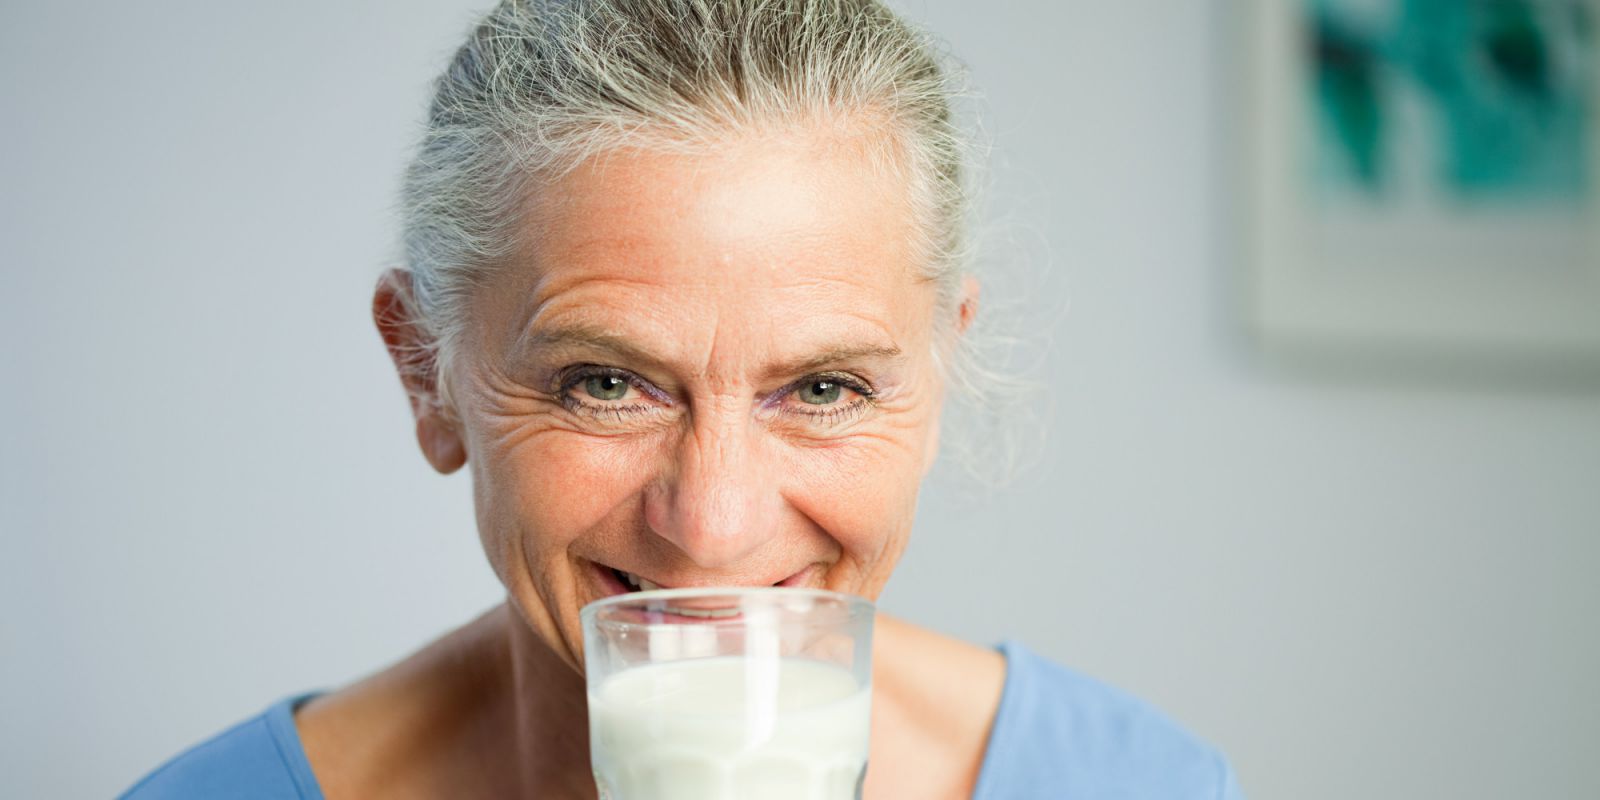 Sữa bột dành cho người già, người cao tuổi | Nefesure We Care Platinum